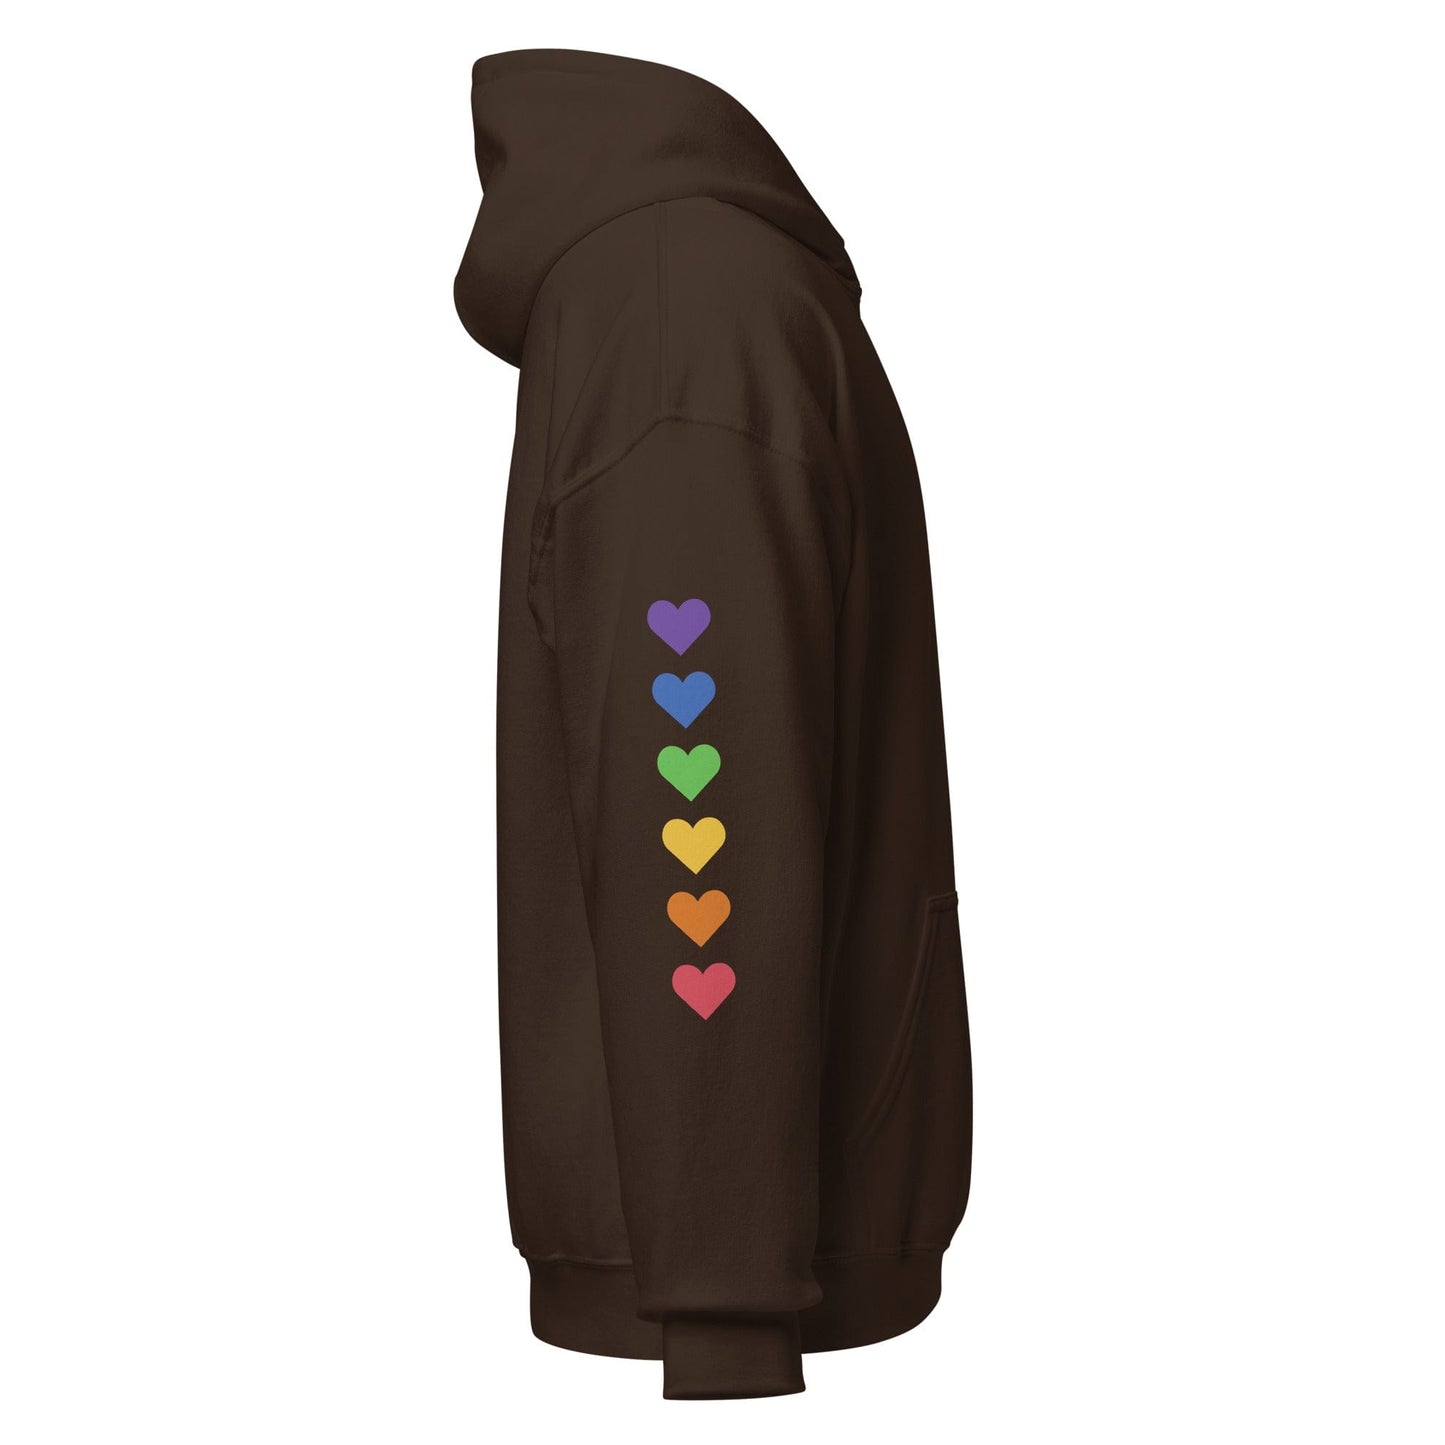 right-dark-chocolate-genderless-hearts-pride-heavy-blend-hoodie-by-feminist-define